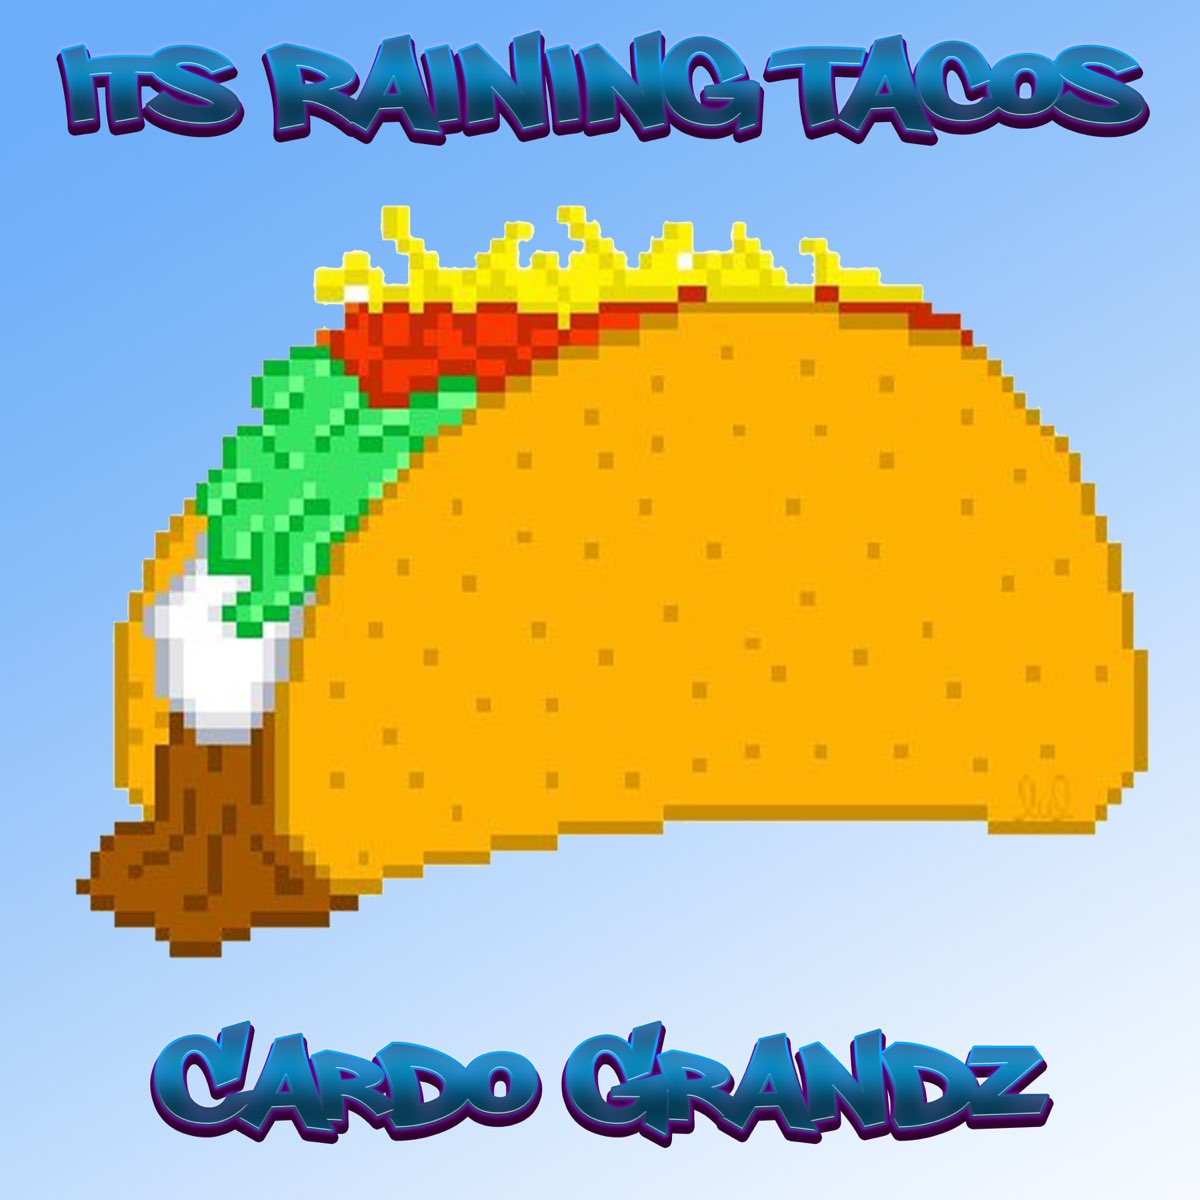 Песня raining tacos